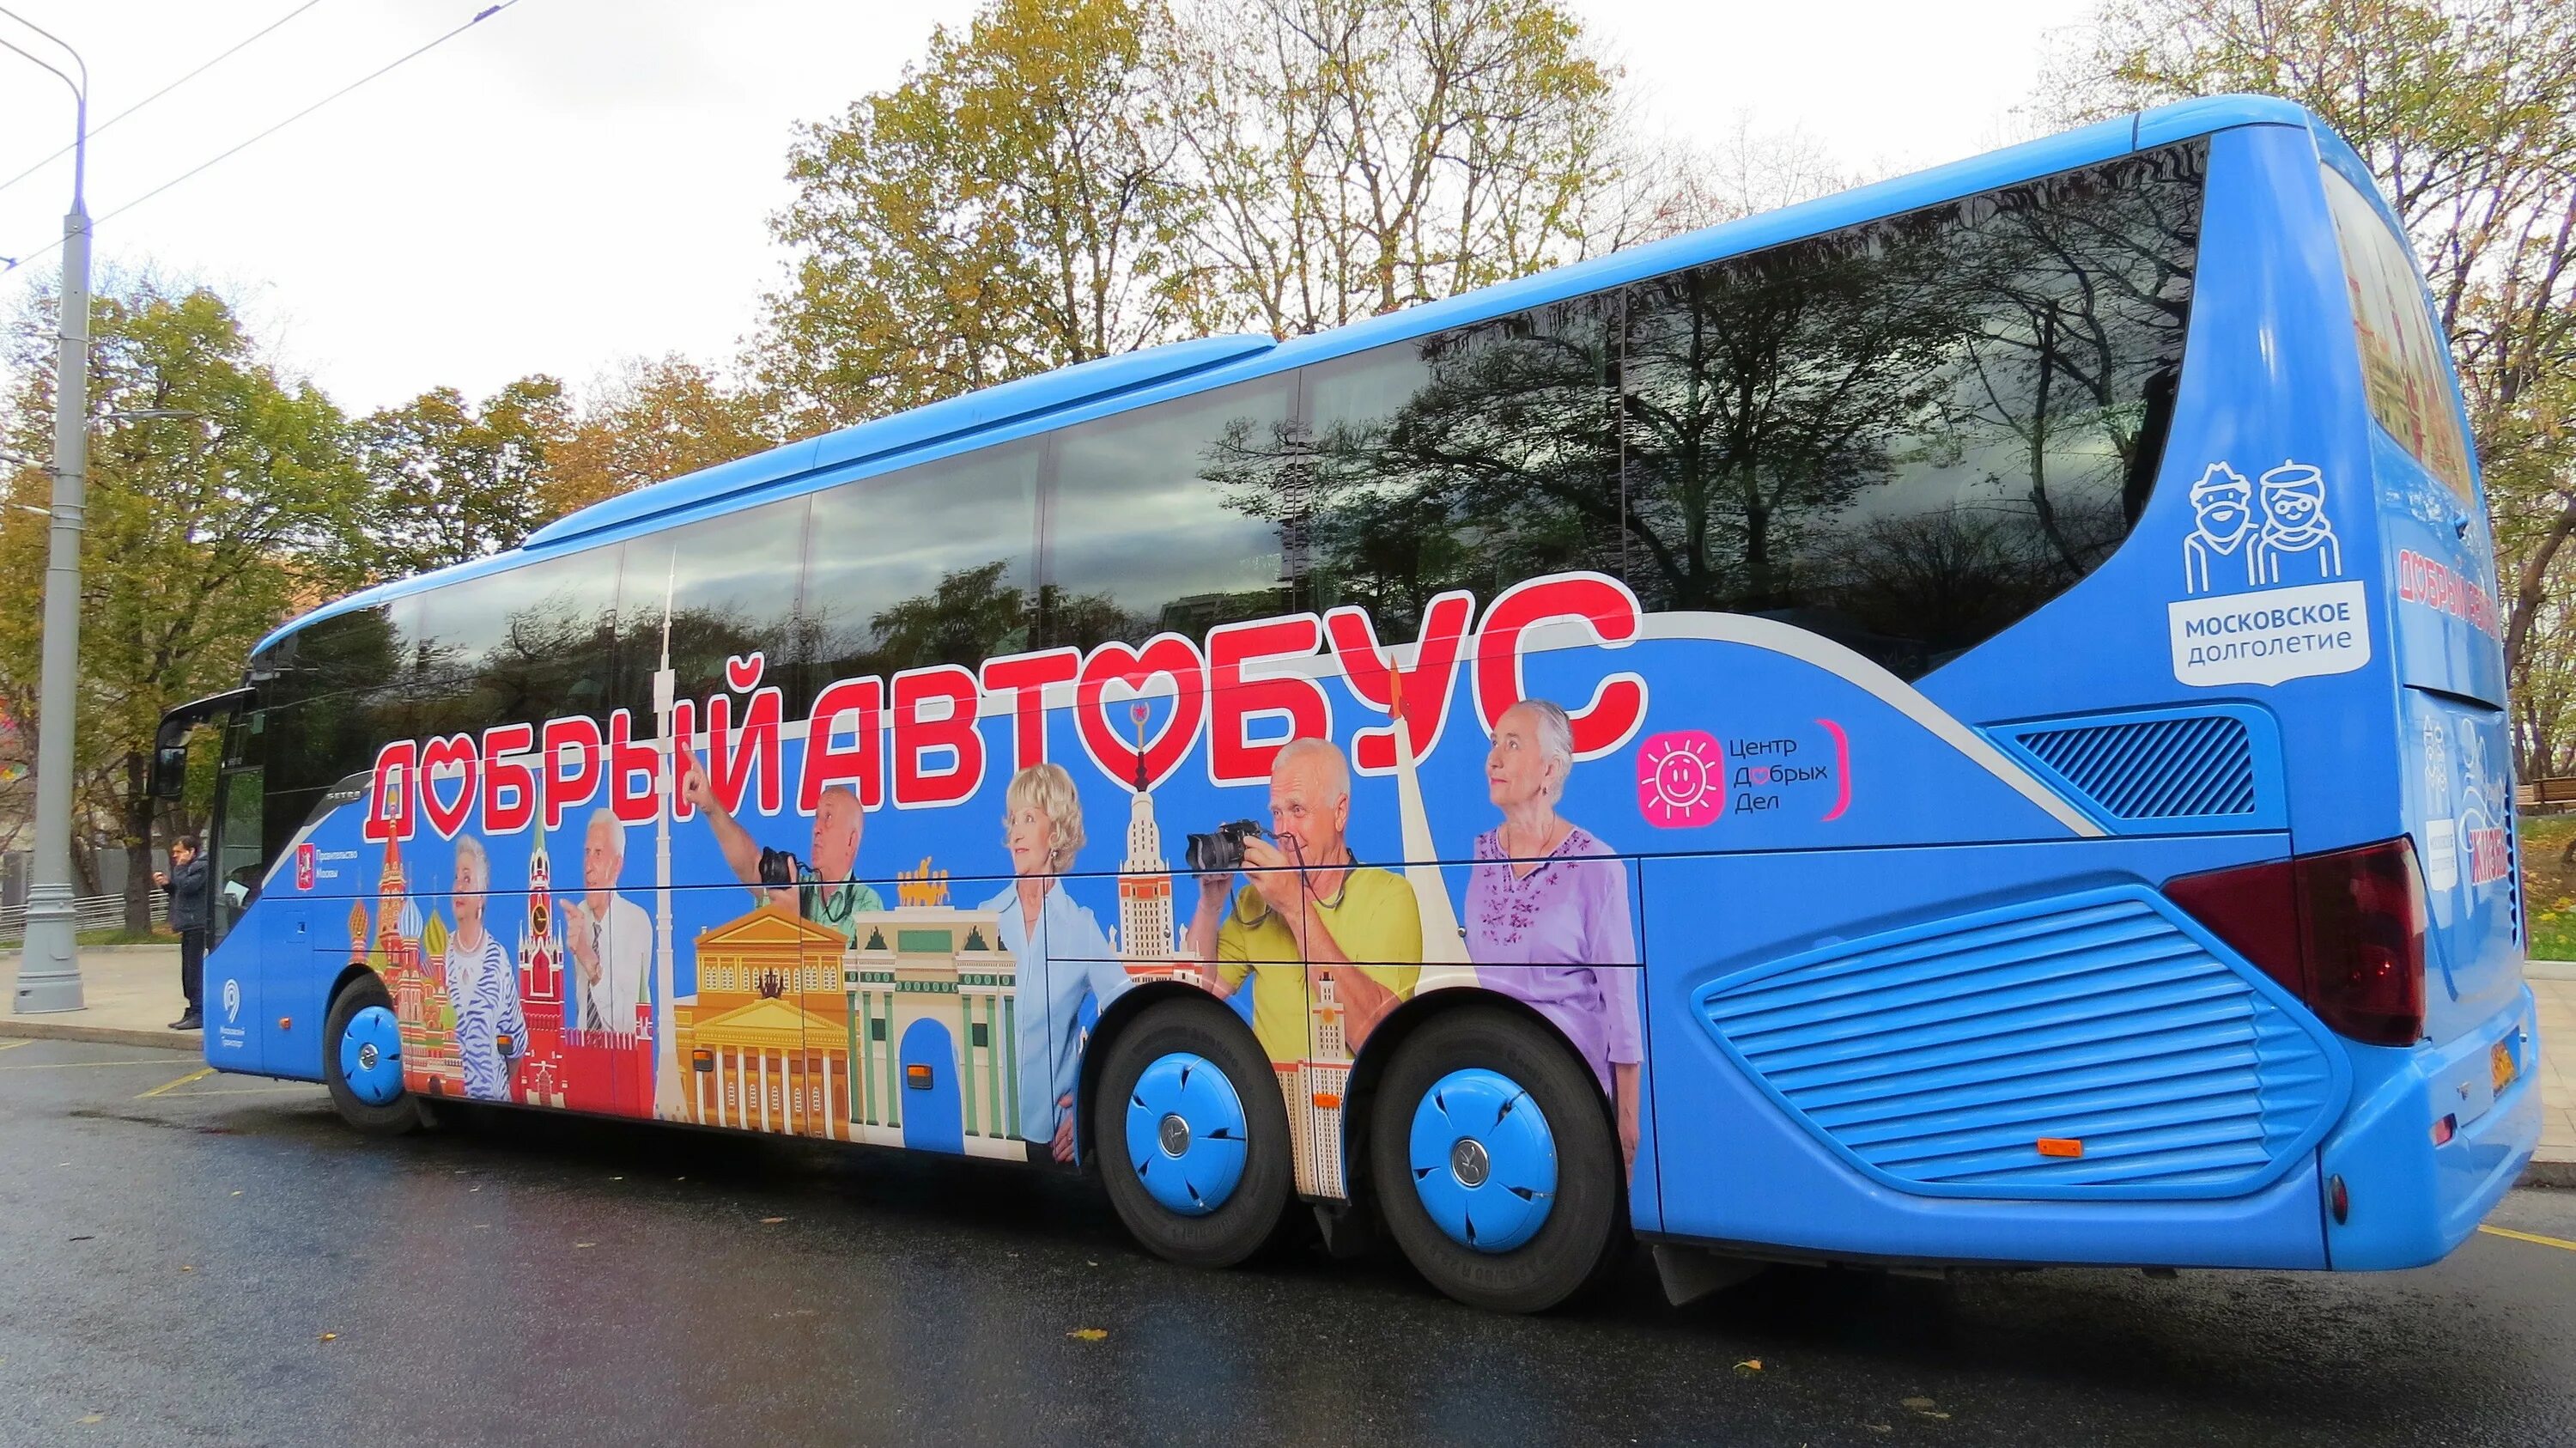 Экскурсионные автобусы для детей. Добрый автобус Московское долголетие. Разноцветные автобусы. Детский экскурсионный автобус. Добрый автобус экскурсии.